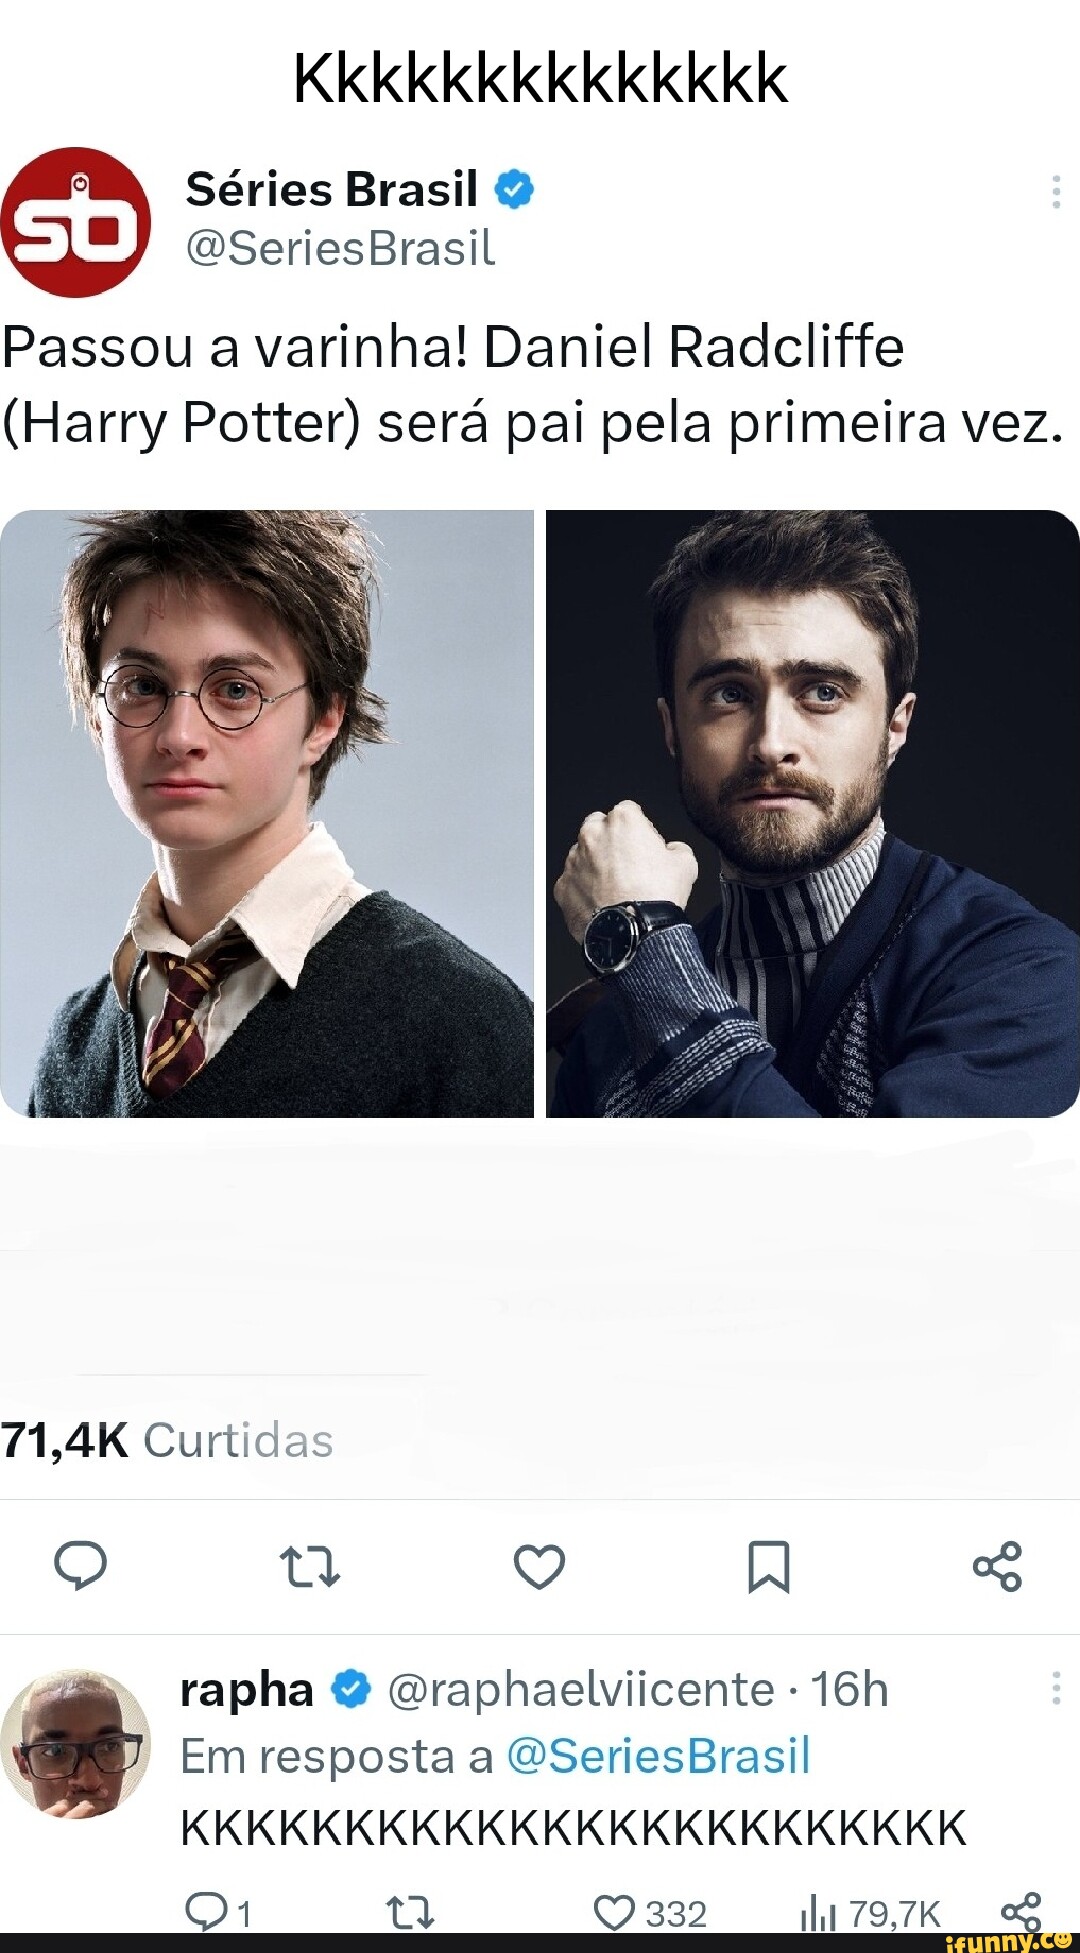 Harry Potter - Ah Negão!